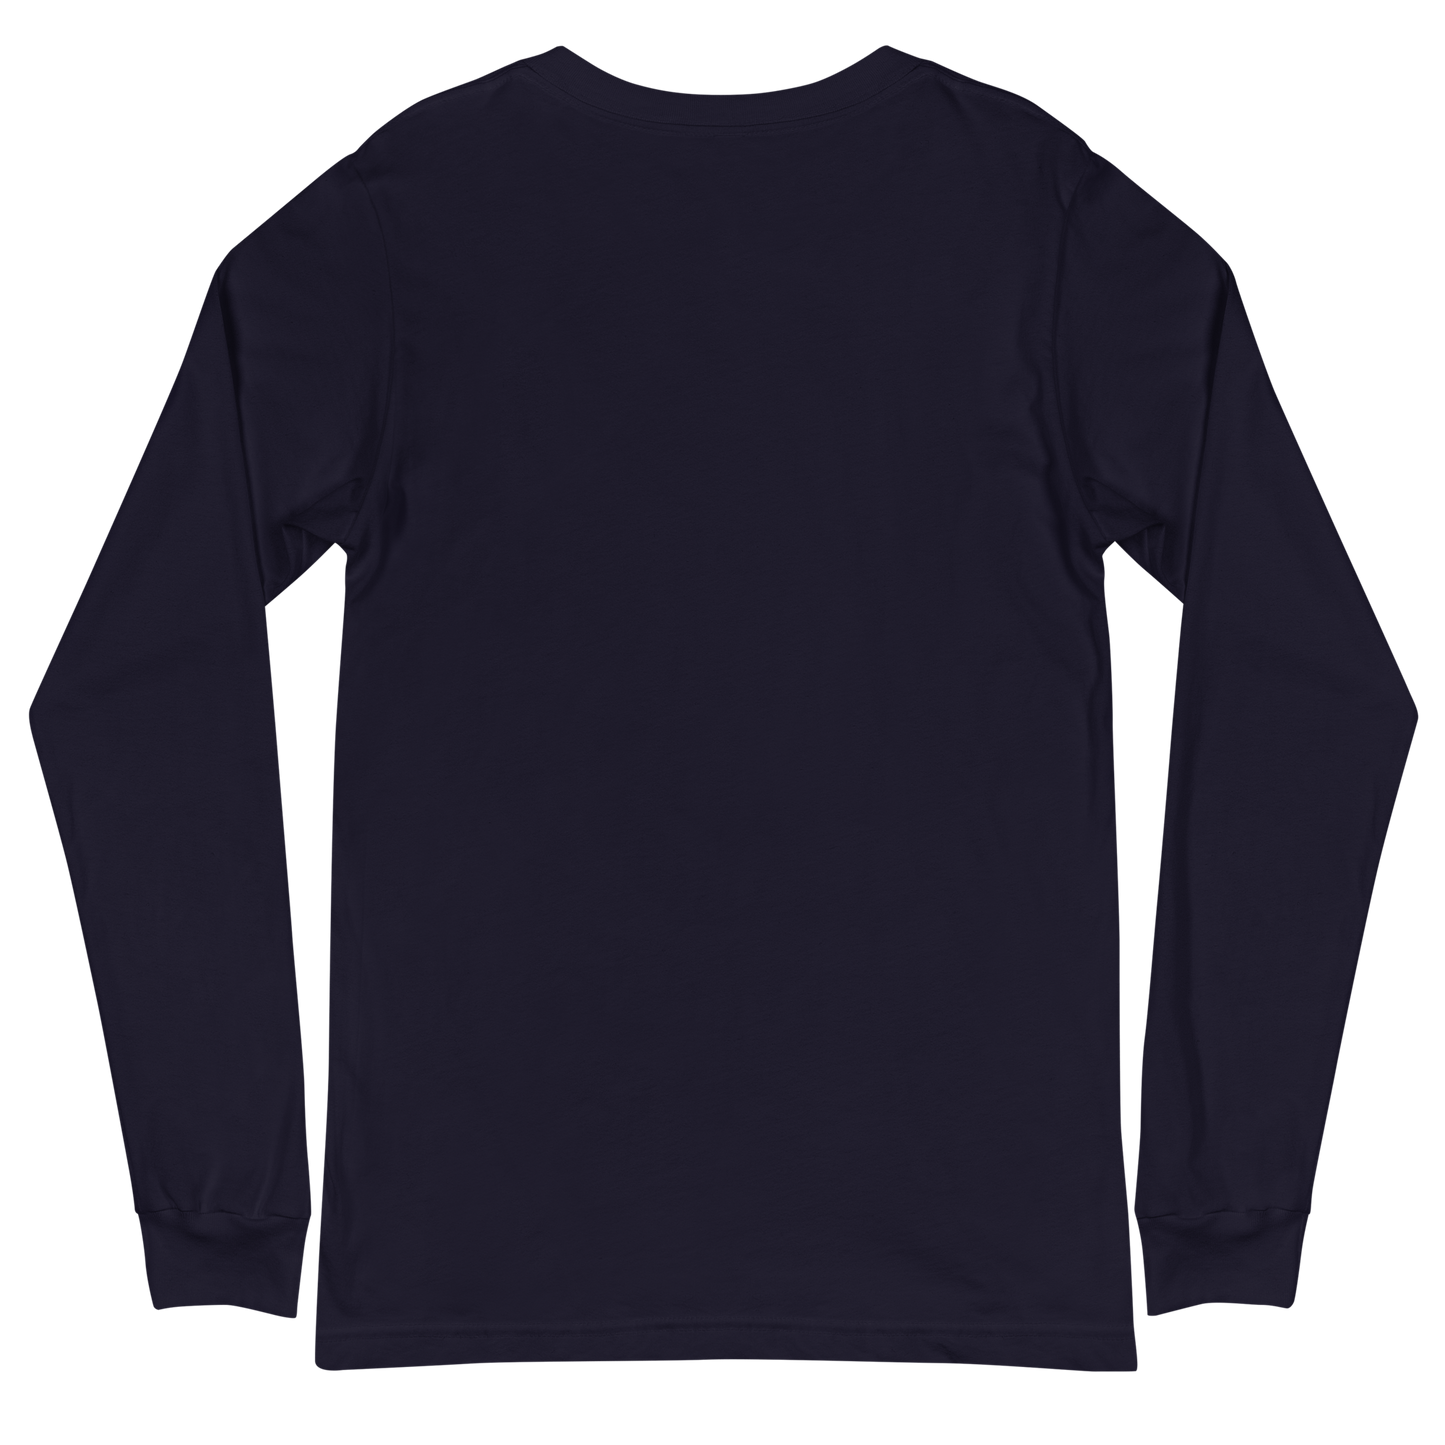 ADULT Long Sleeve Shirt - TAKBEERLAND FULL LOGO (Centered/Medium) - Black